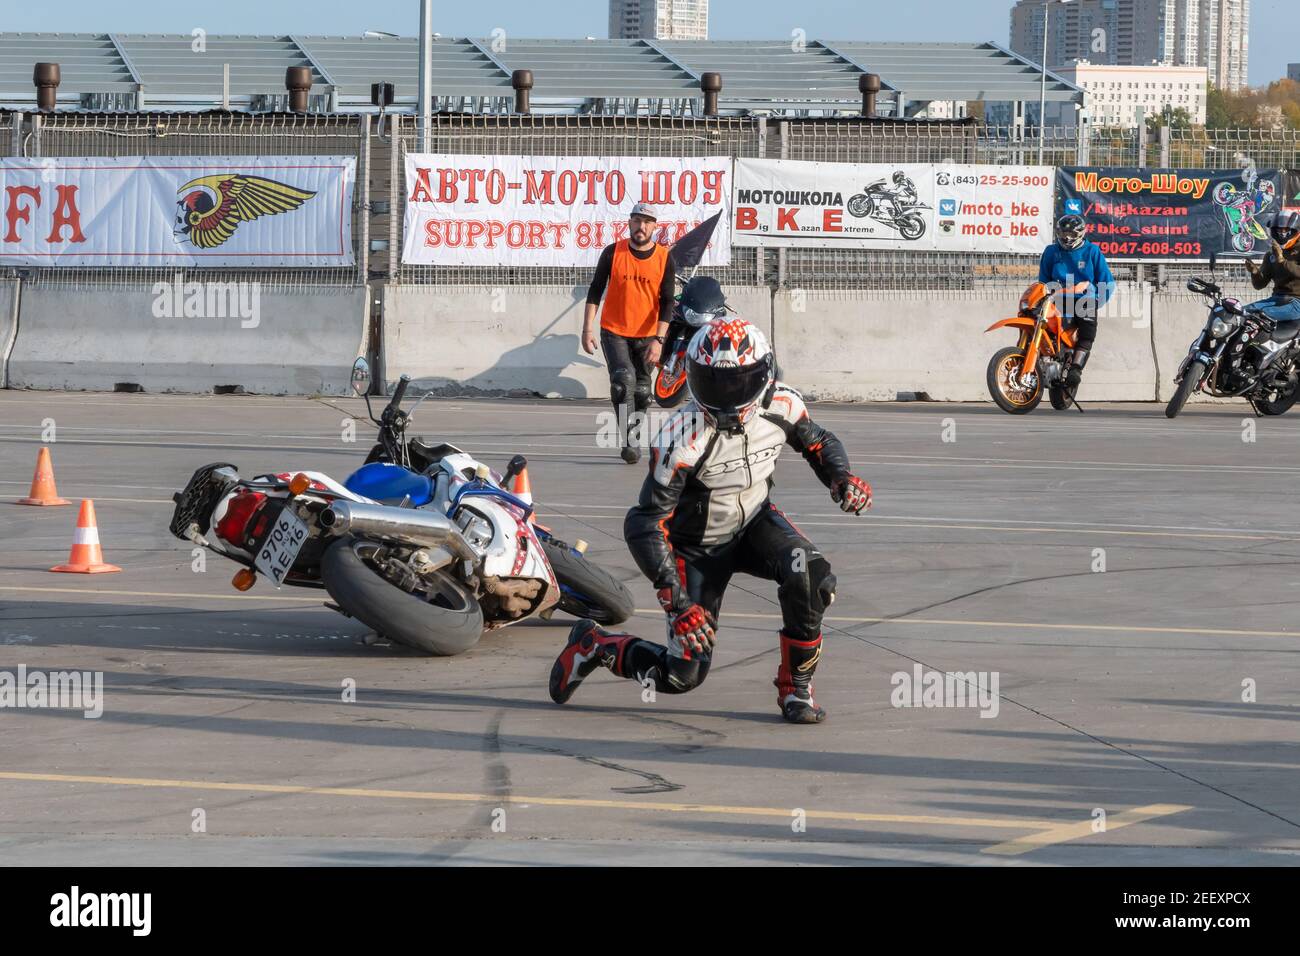 Kazan, Russie-26 septembre 2020 : Gymkhana de moto, chute d'une moto Honda sur une piste de course Banque D'Images